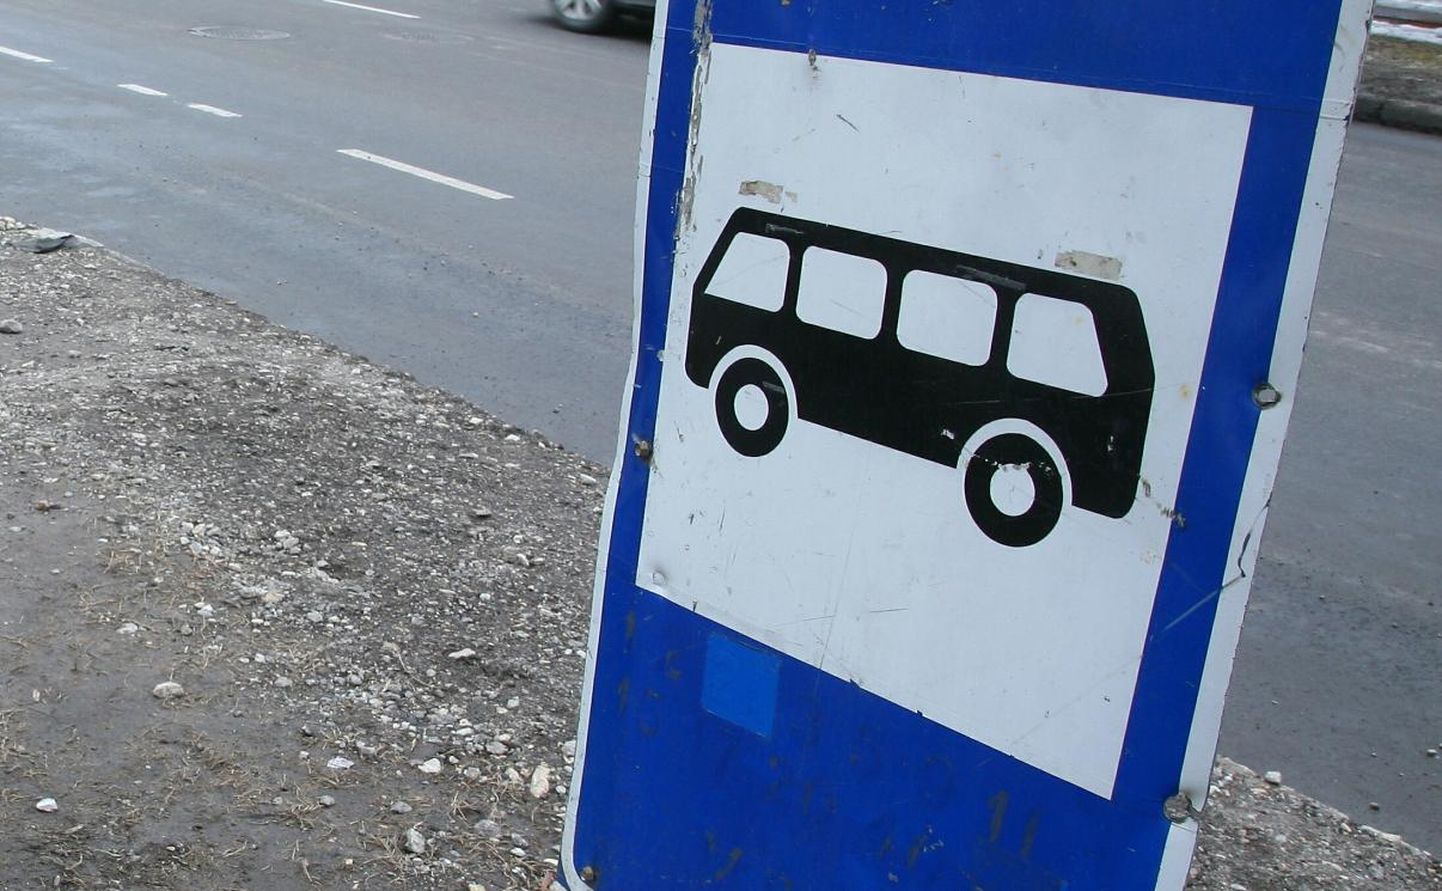 Pärnumaa ühistranspordikeskus teatas, et alates 7. märtsist sõidab õhtune buss Võistest edasi Häädemeesteni